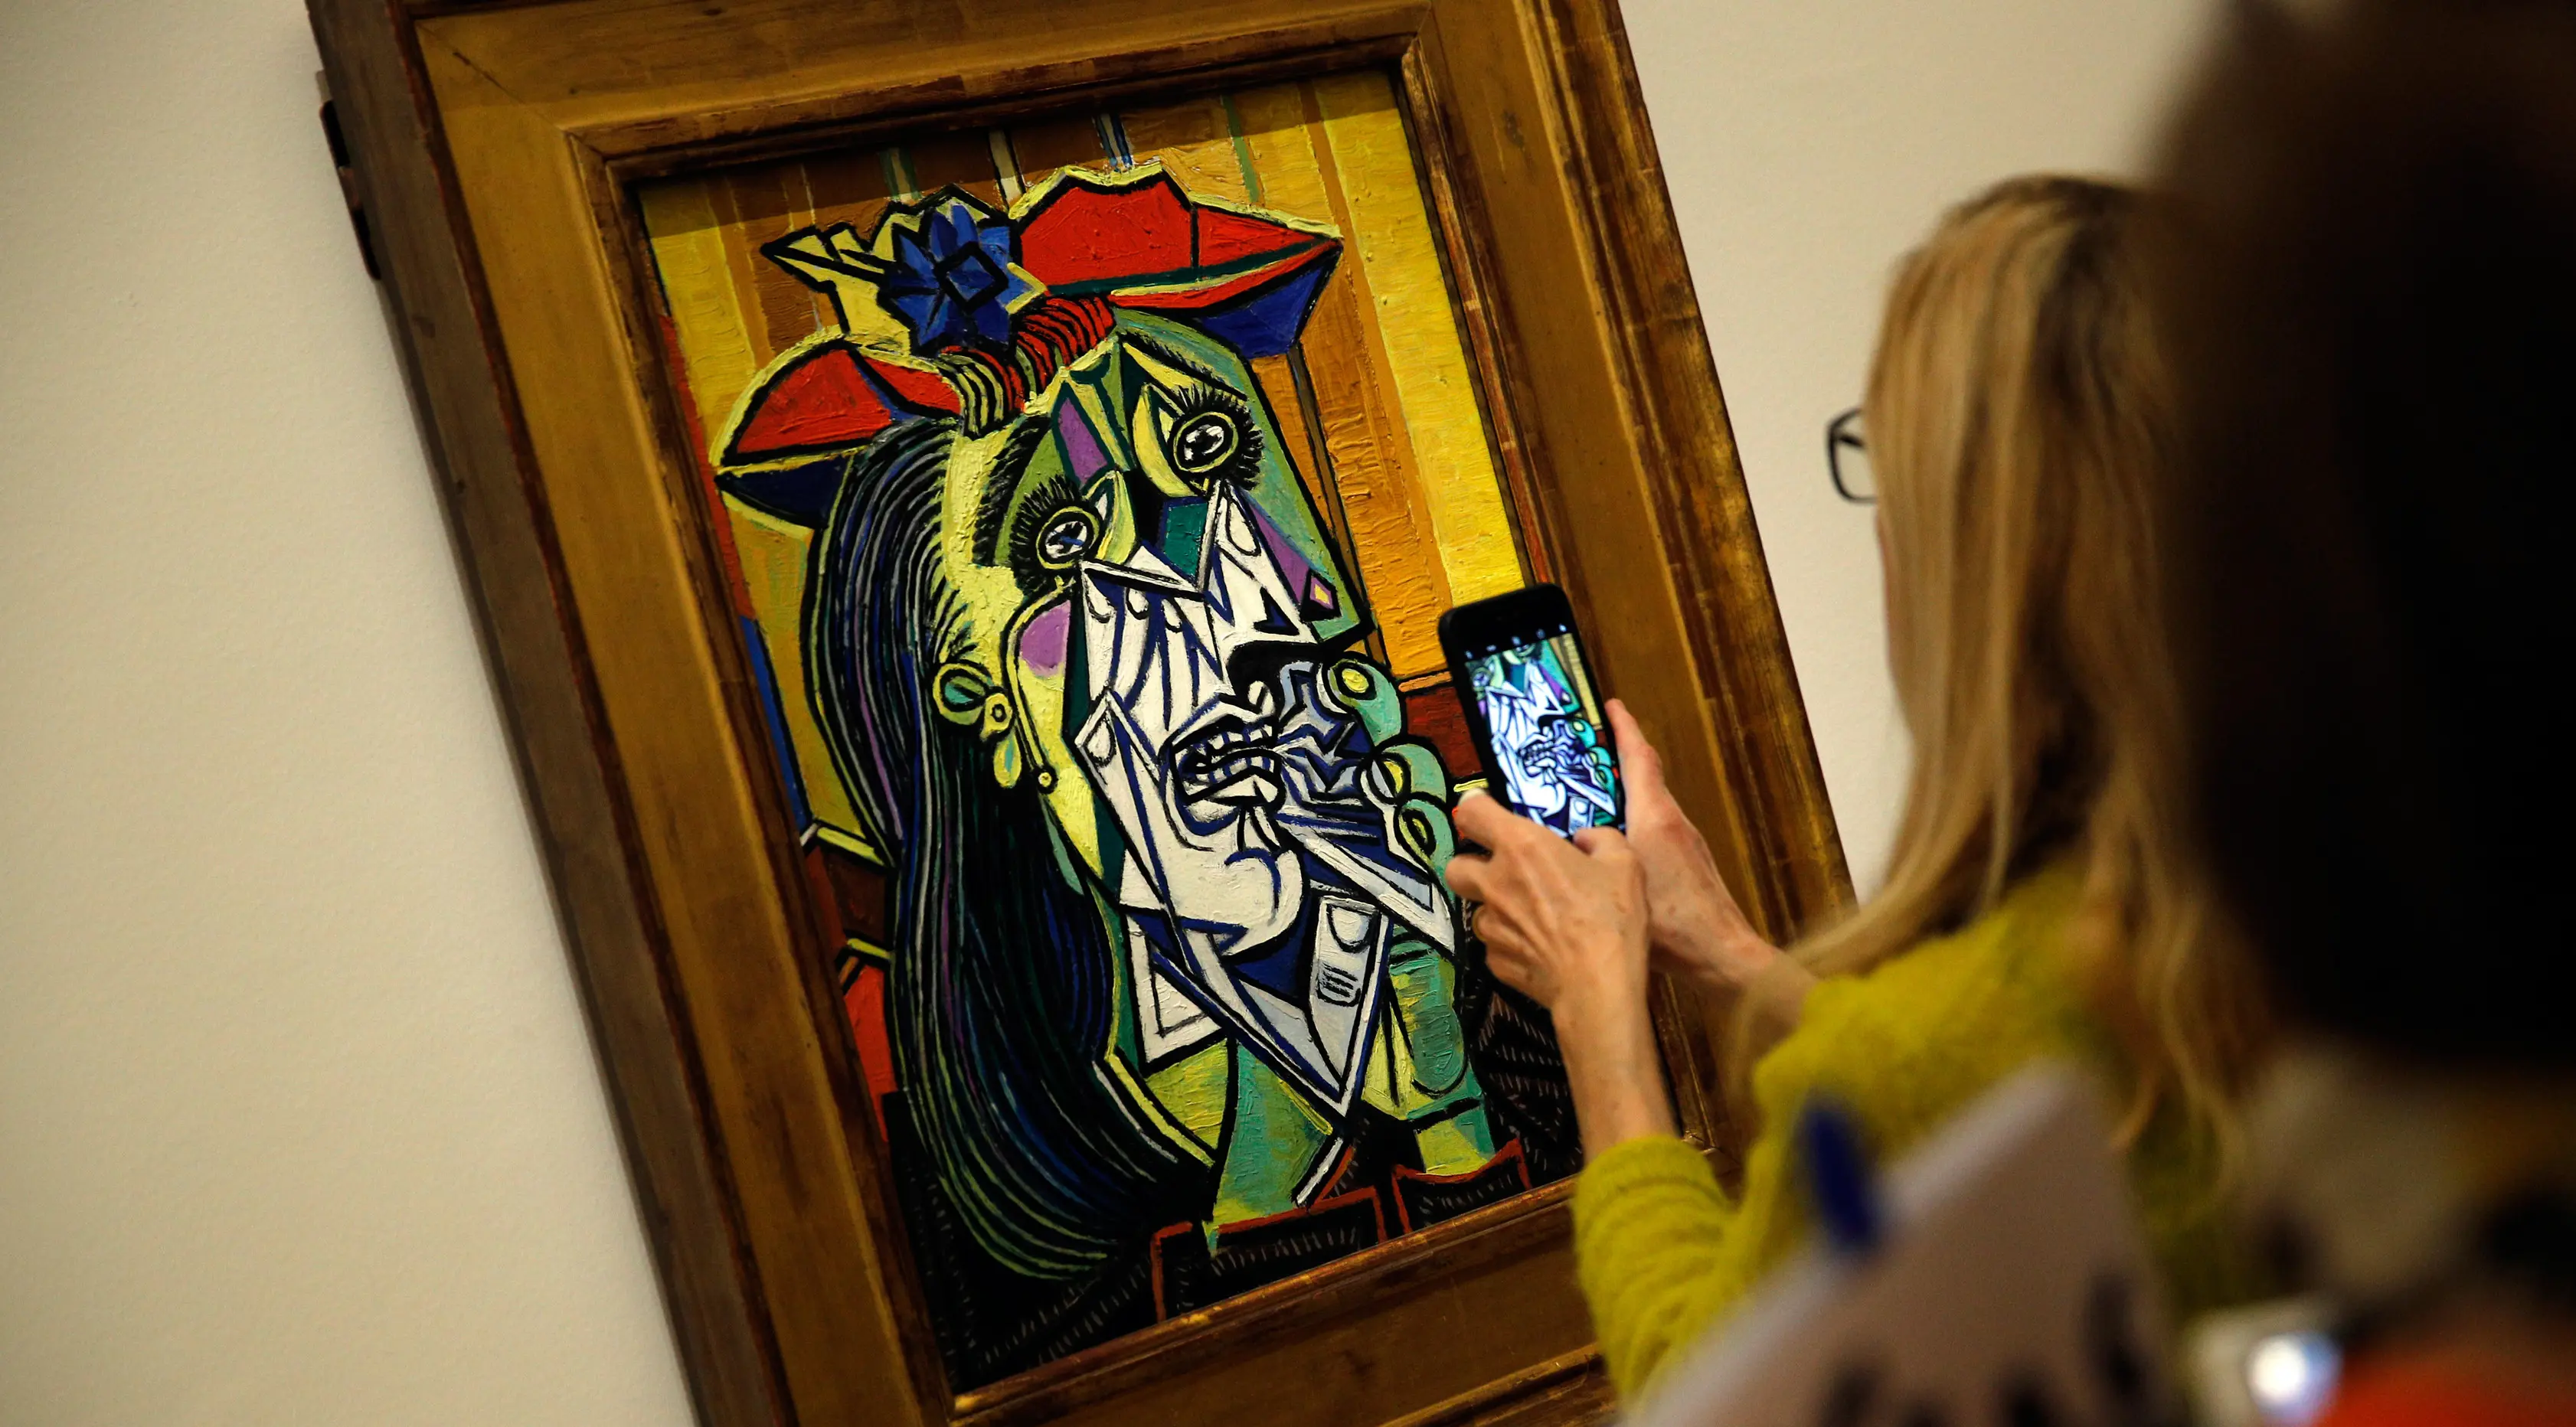 Pengunjung mengambil gambar lukisan berjudul Femme en pleurs karya Pablo Picasso di Museum Picasso, Paris, Prancis, Jumat (23/3). Pameran ini kerja sama Musée national Picasso-Paris dan Museo Nacional Centro de Arte Reina Sofía. (AP Photo/Christophe Ena)